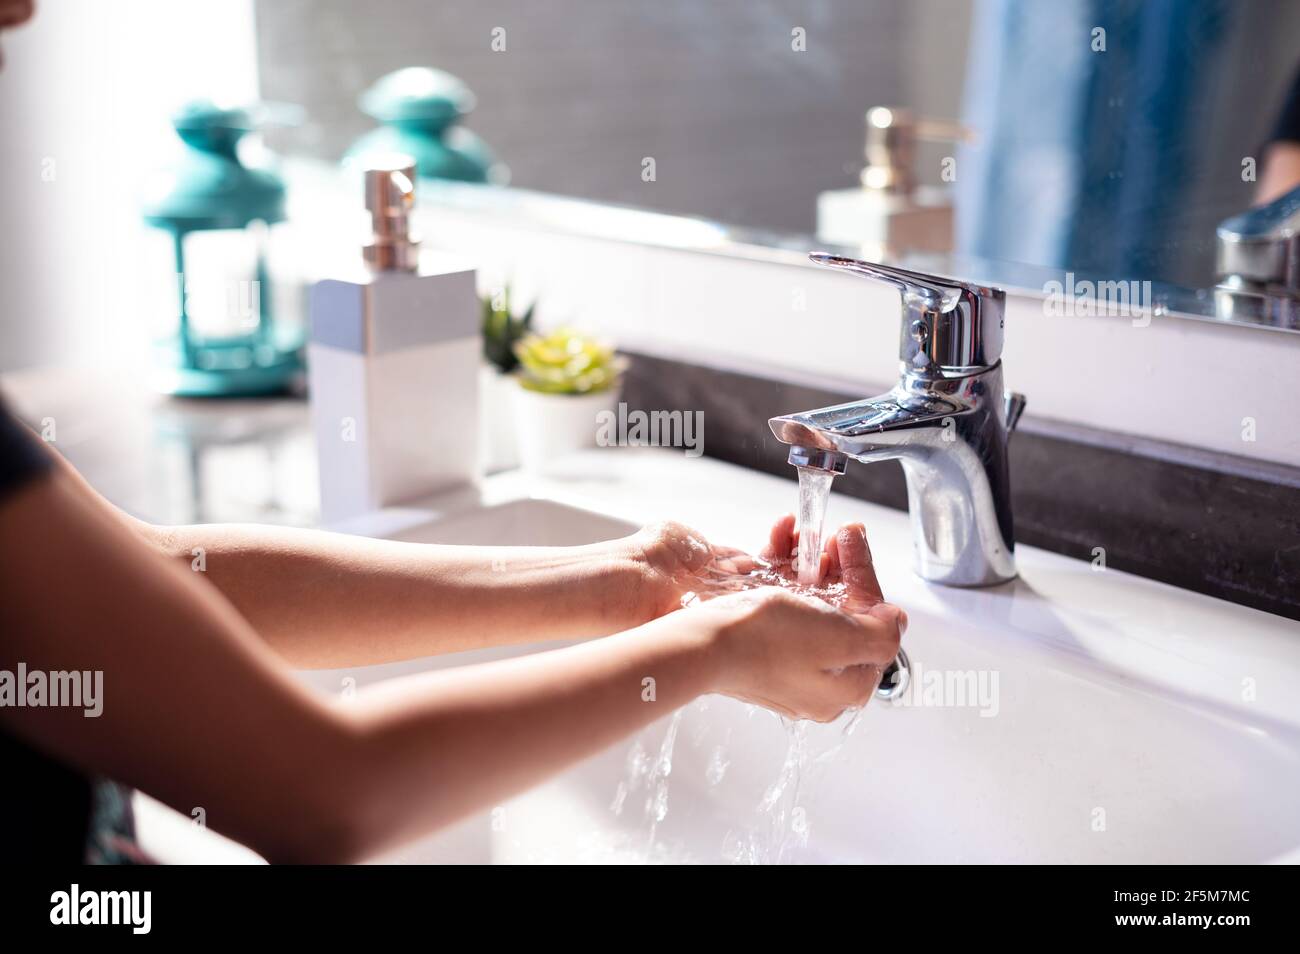 Ein junges Mädchen, das während der Covid-19-Pandemie die Hände über einem Waschbecken mit fließendem Wasser wascht, um sich vor dem gefährlichen Corona-Virus zu schützen. Stockfoto